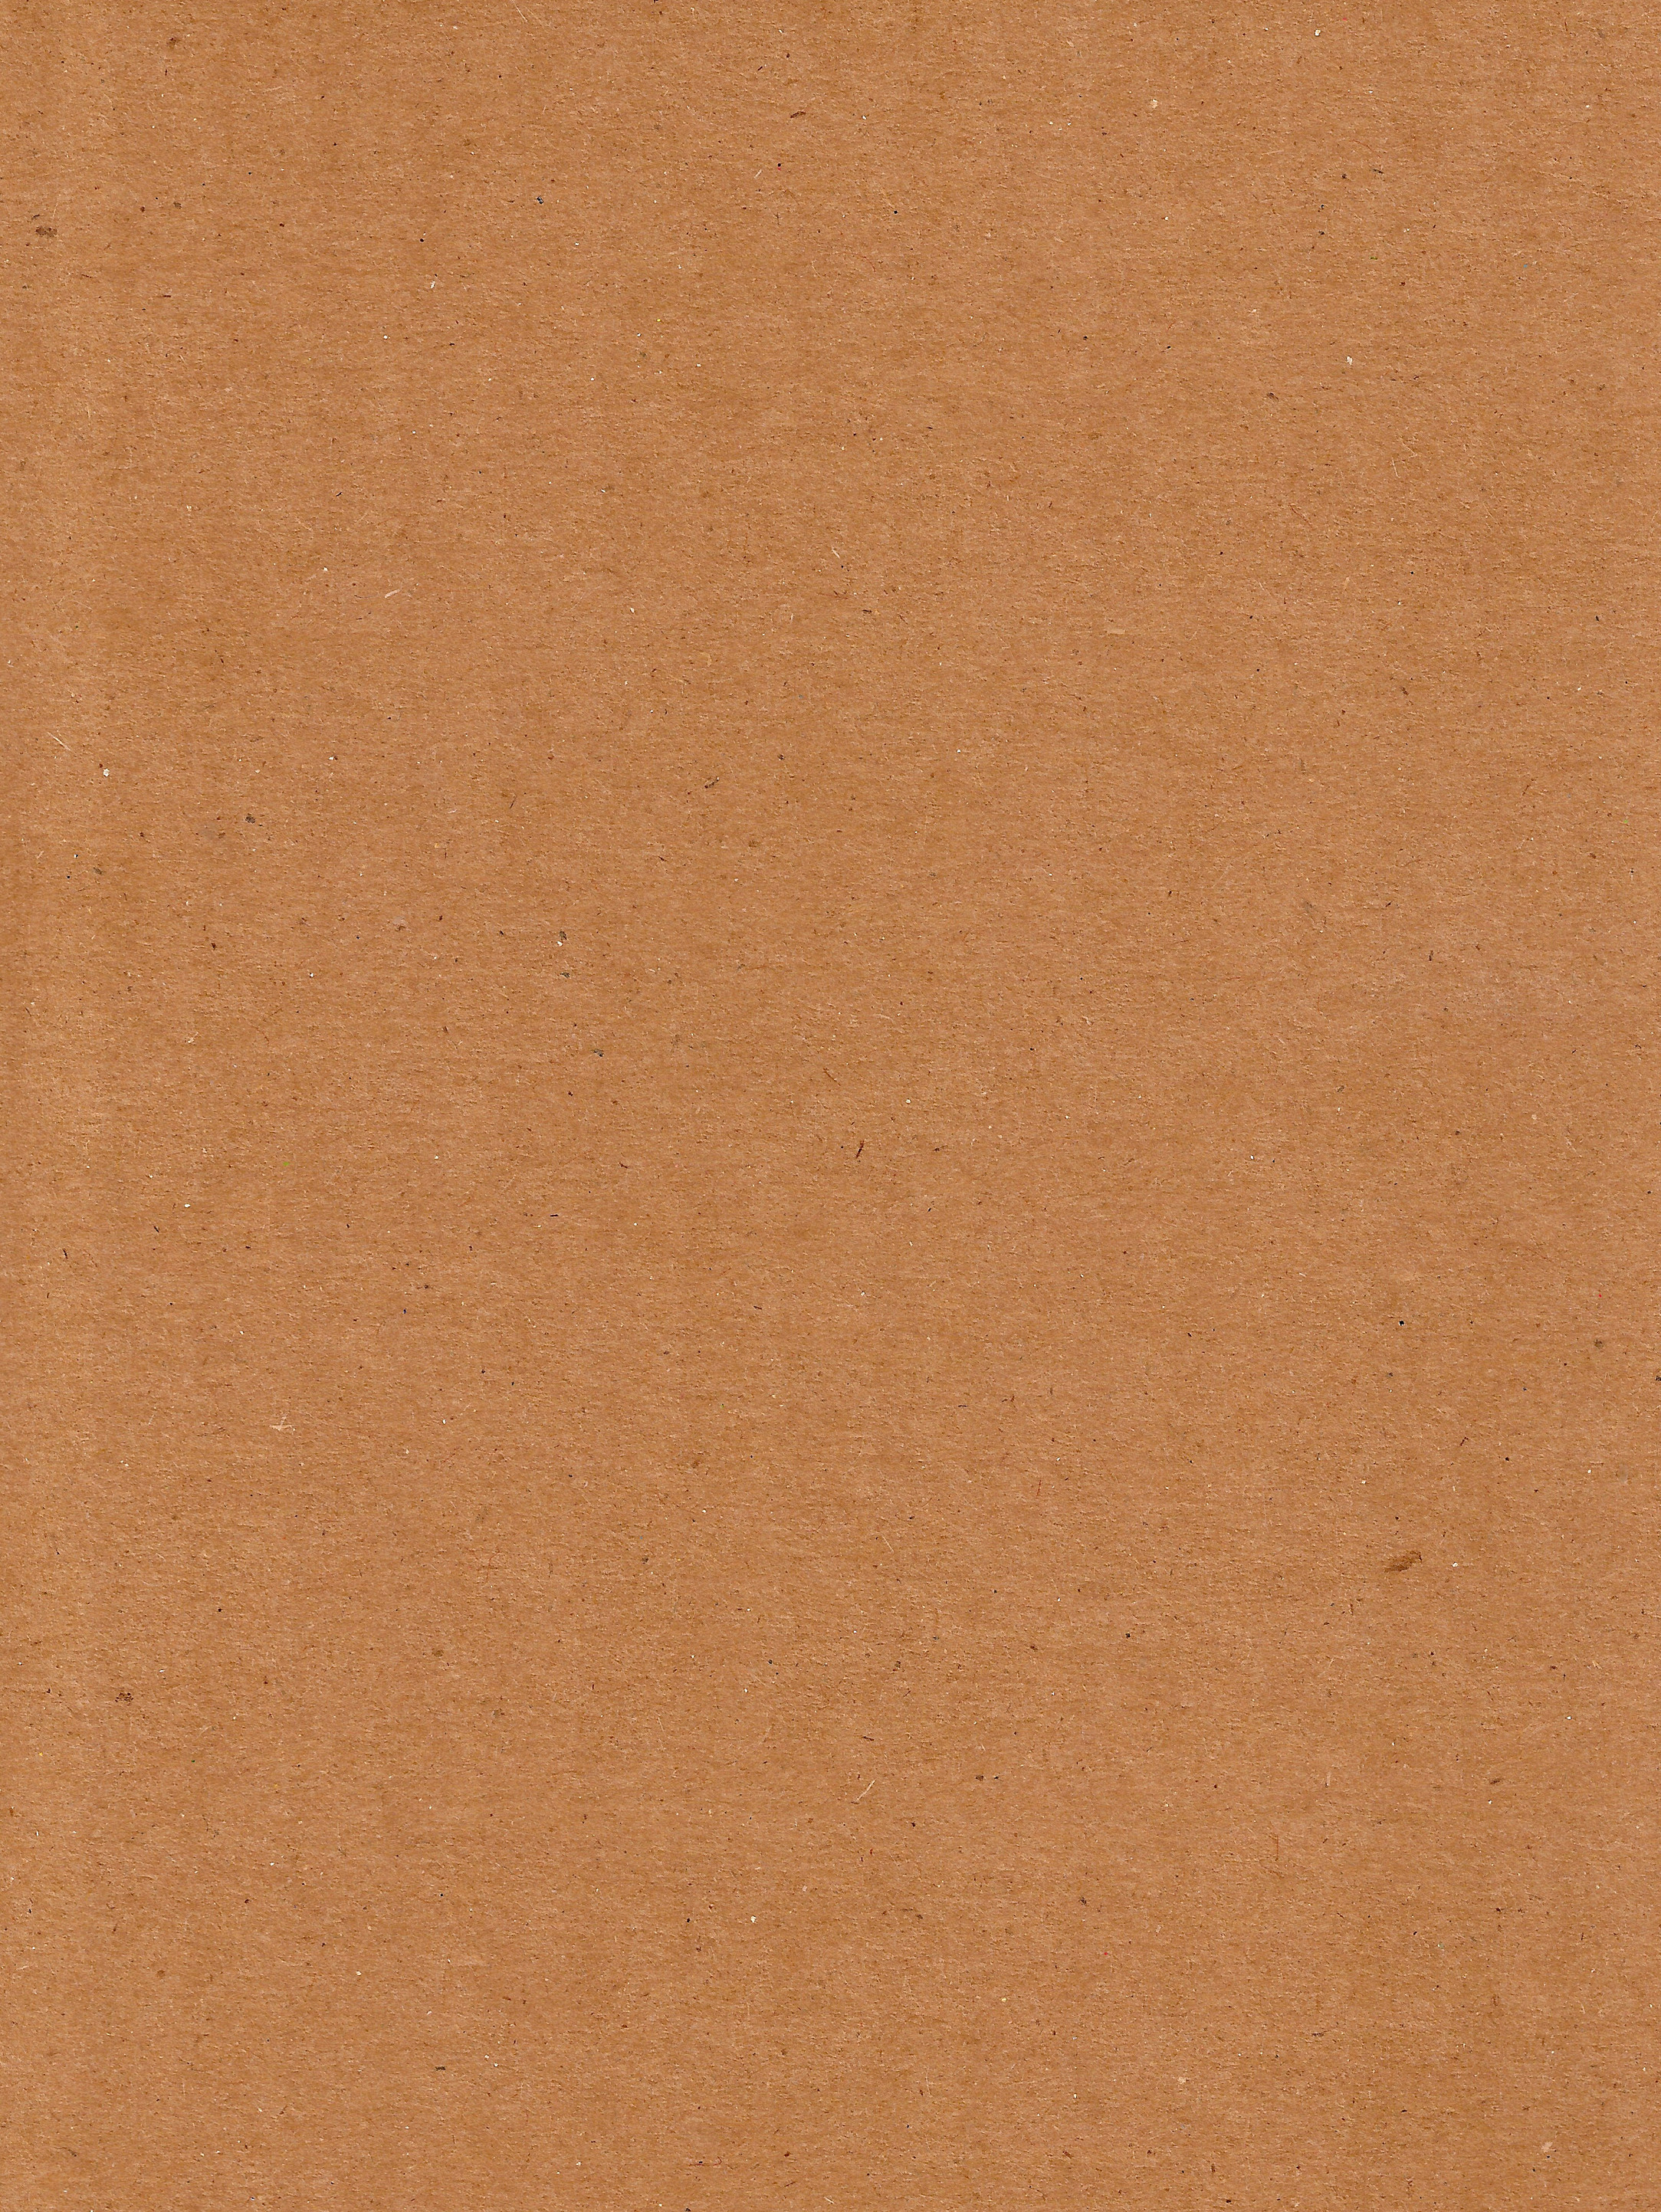 cardboard_brown_paper_texture_by_enchantedgal_stock.jpg (2167×2886 ...